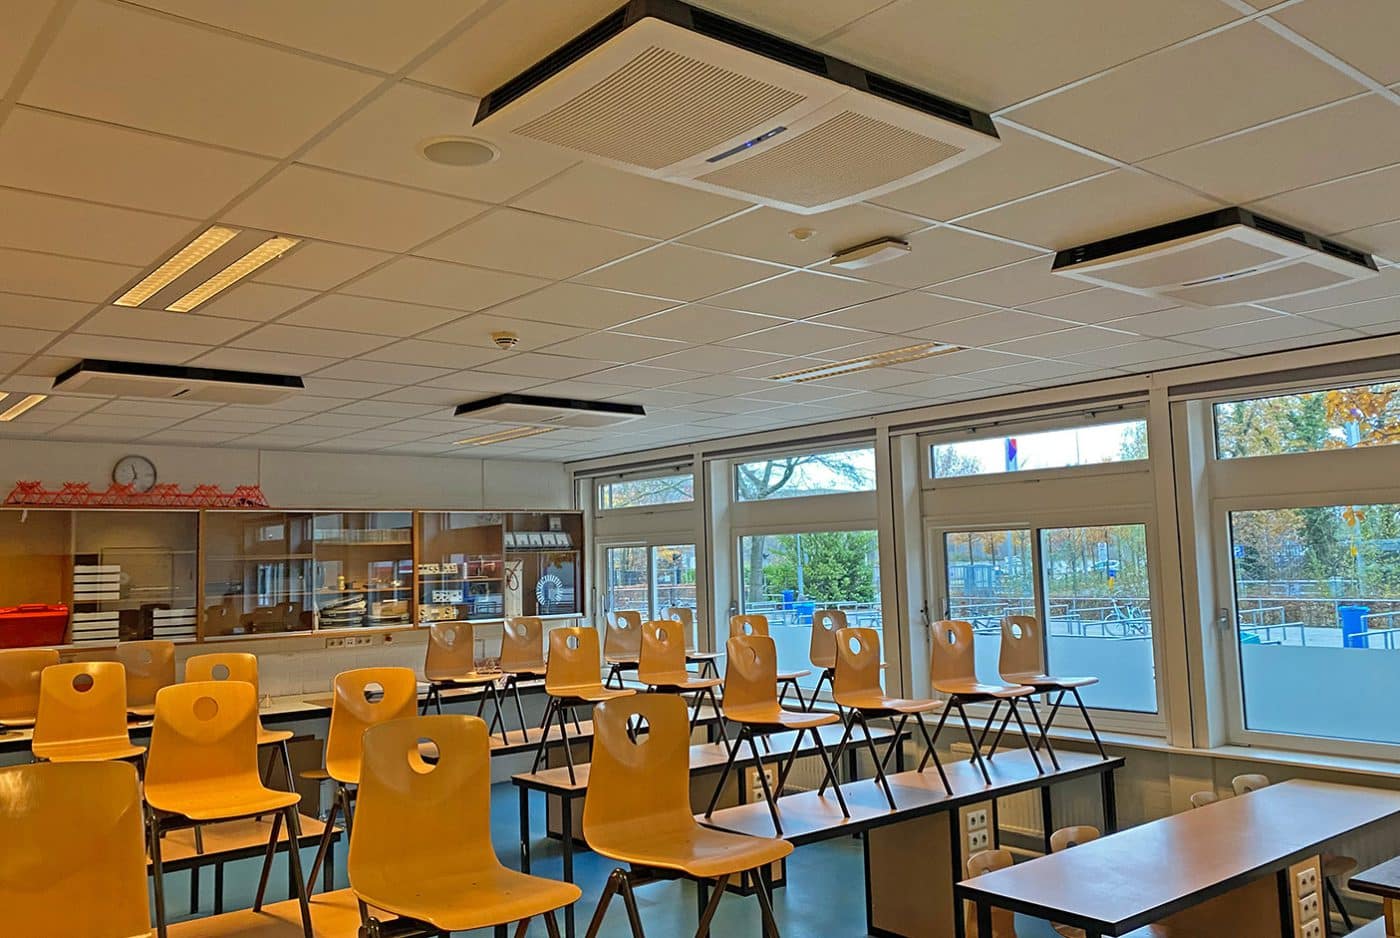 Gesamtschule De Nassau. Deckenluftreiniger sorgen für saubere, gesunde Luft in den Klassenzimmern